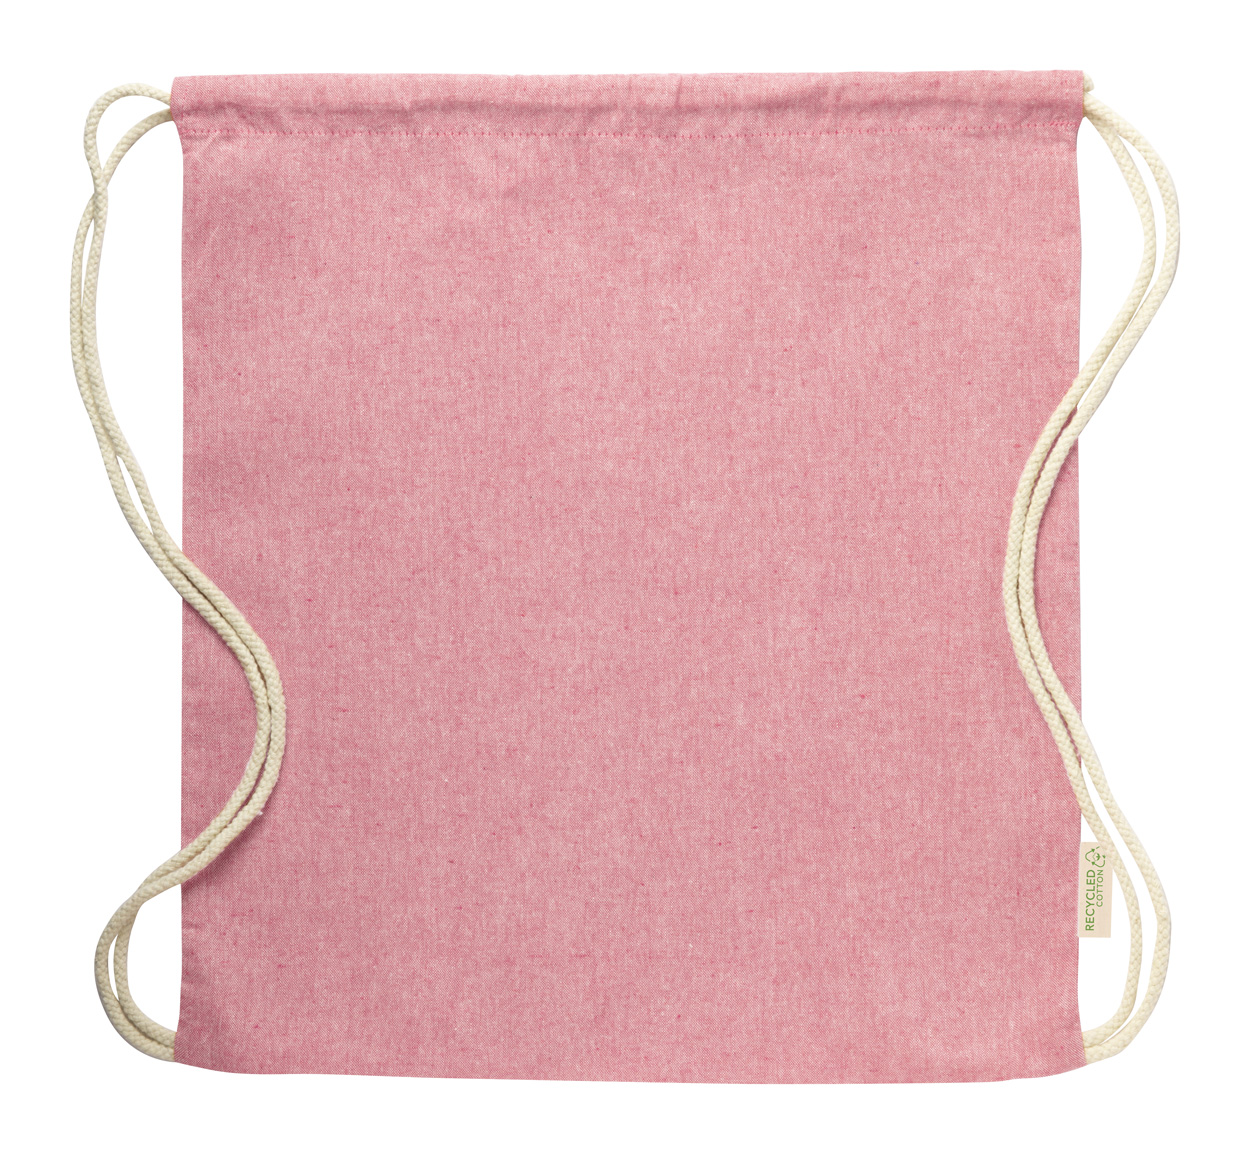 Konim drawstring bag - pink